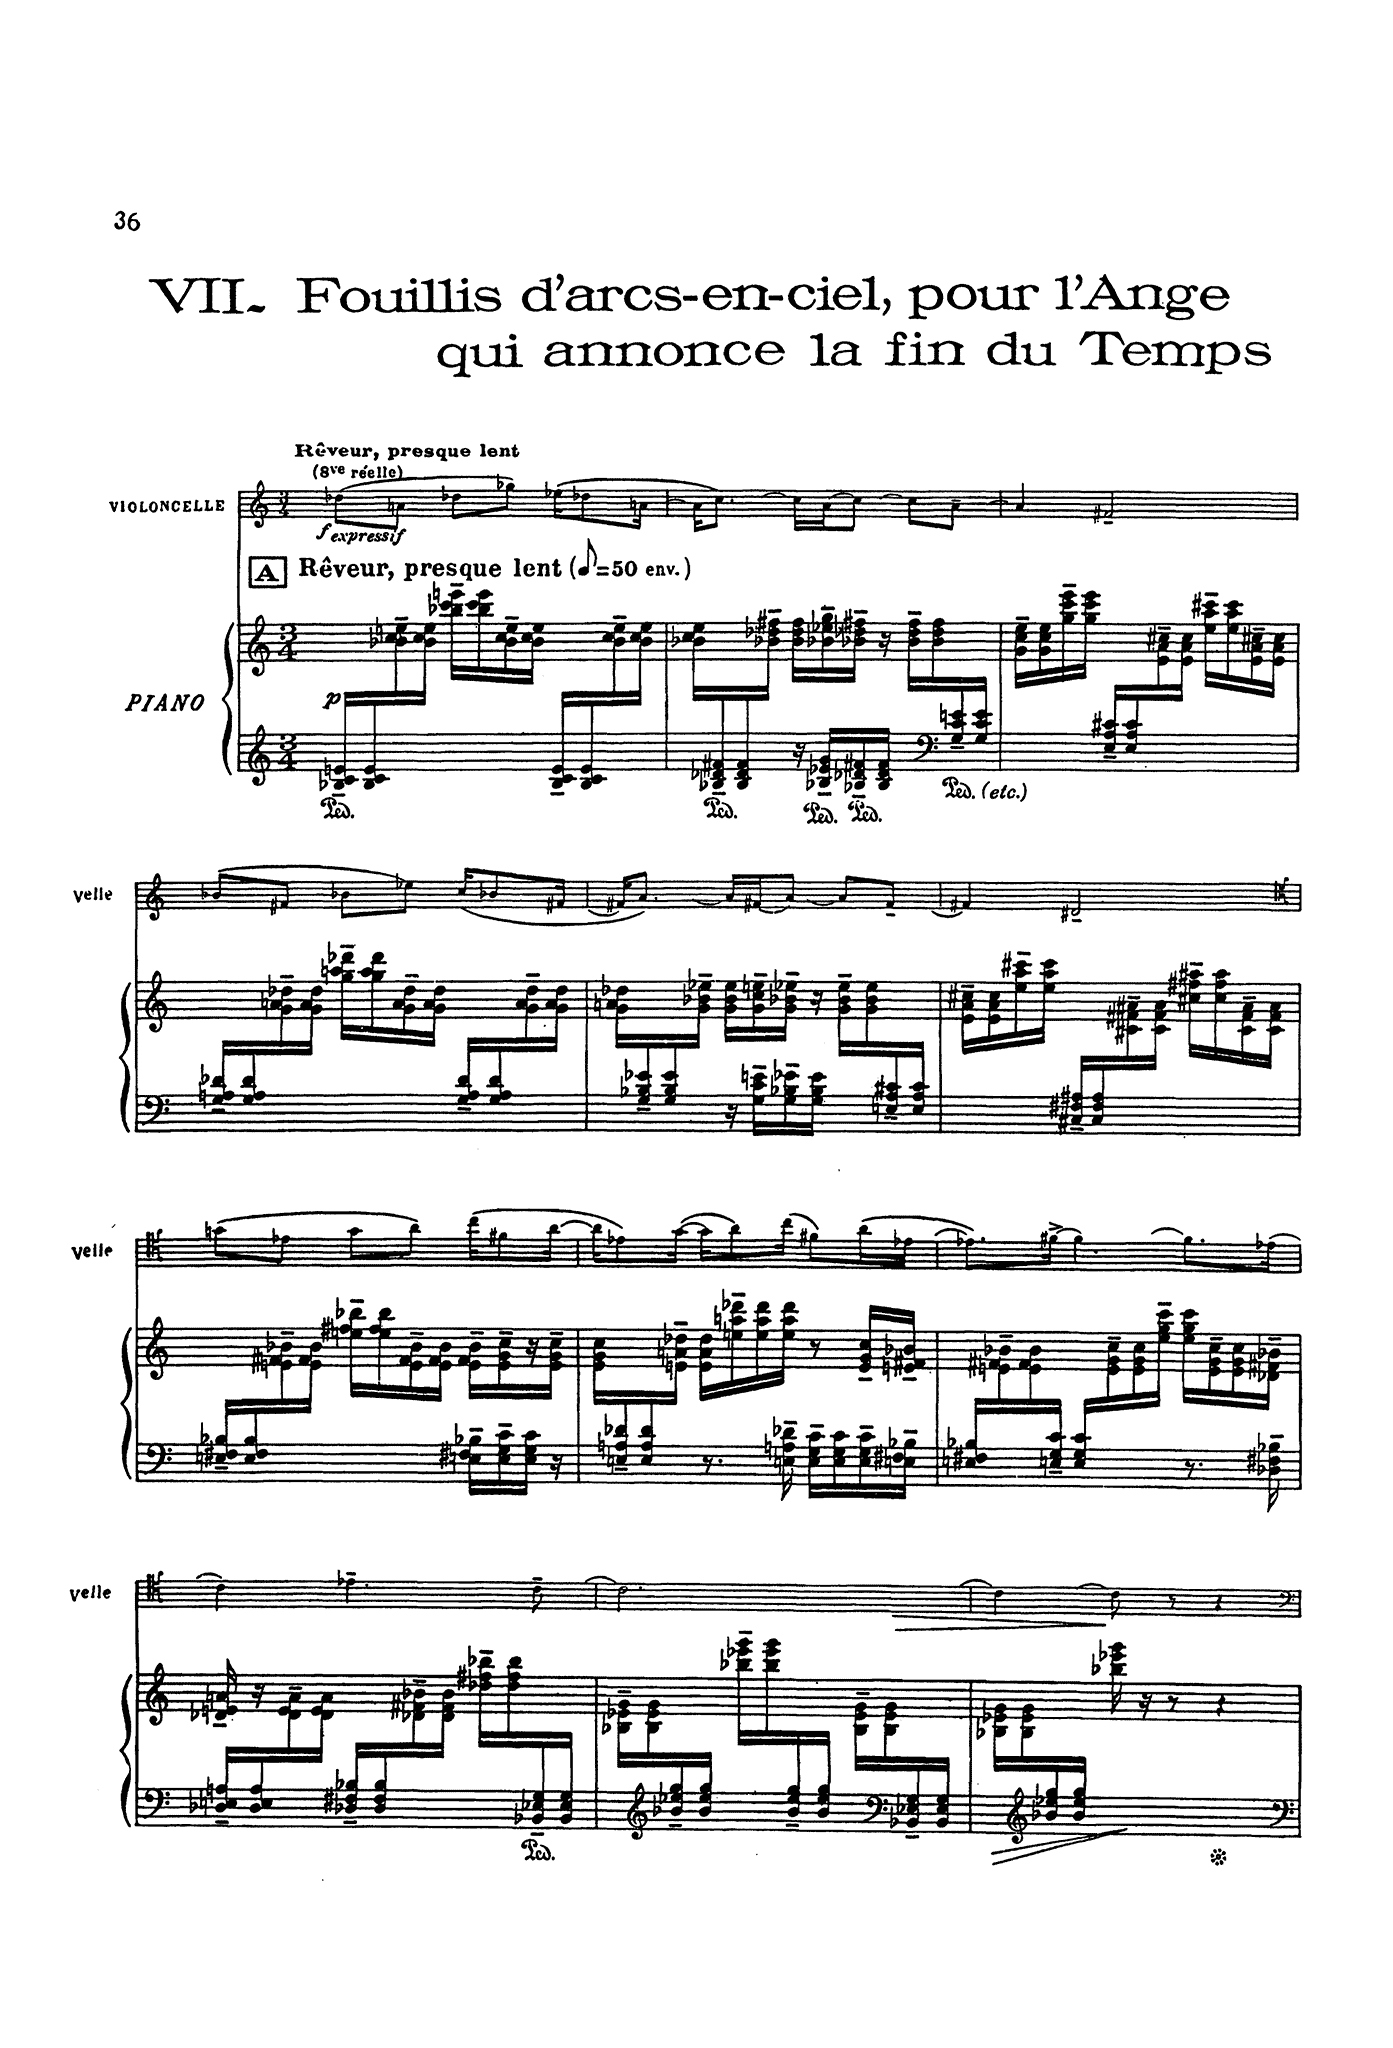 Messiaen Quatuor pour la fin du temps mini score - Movement 7